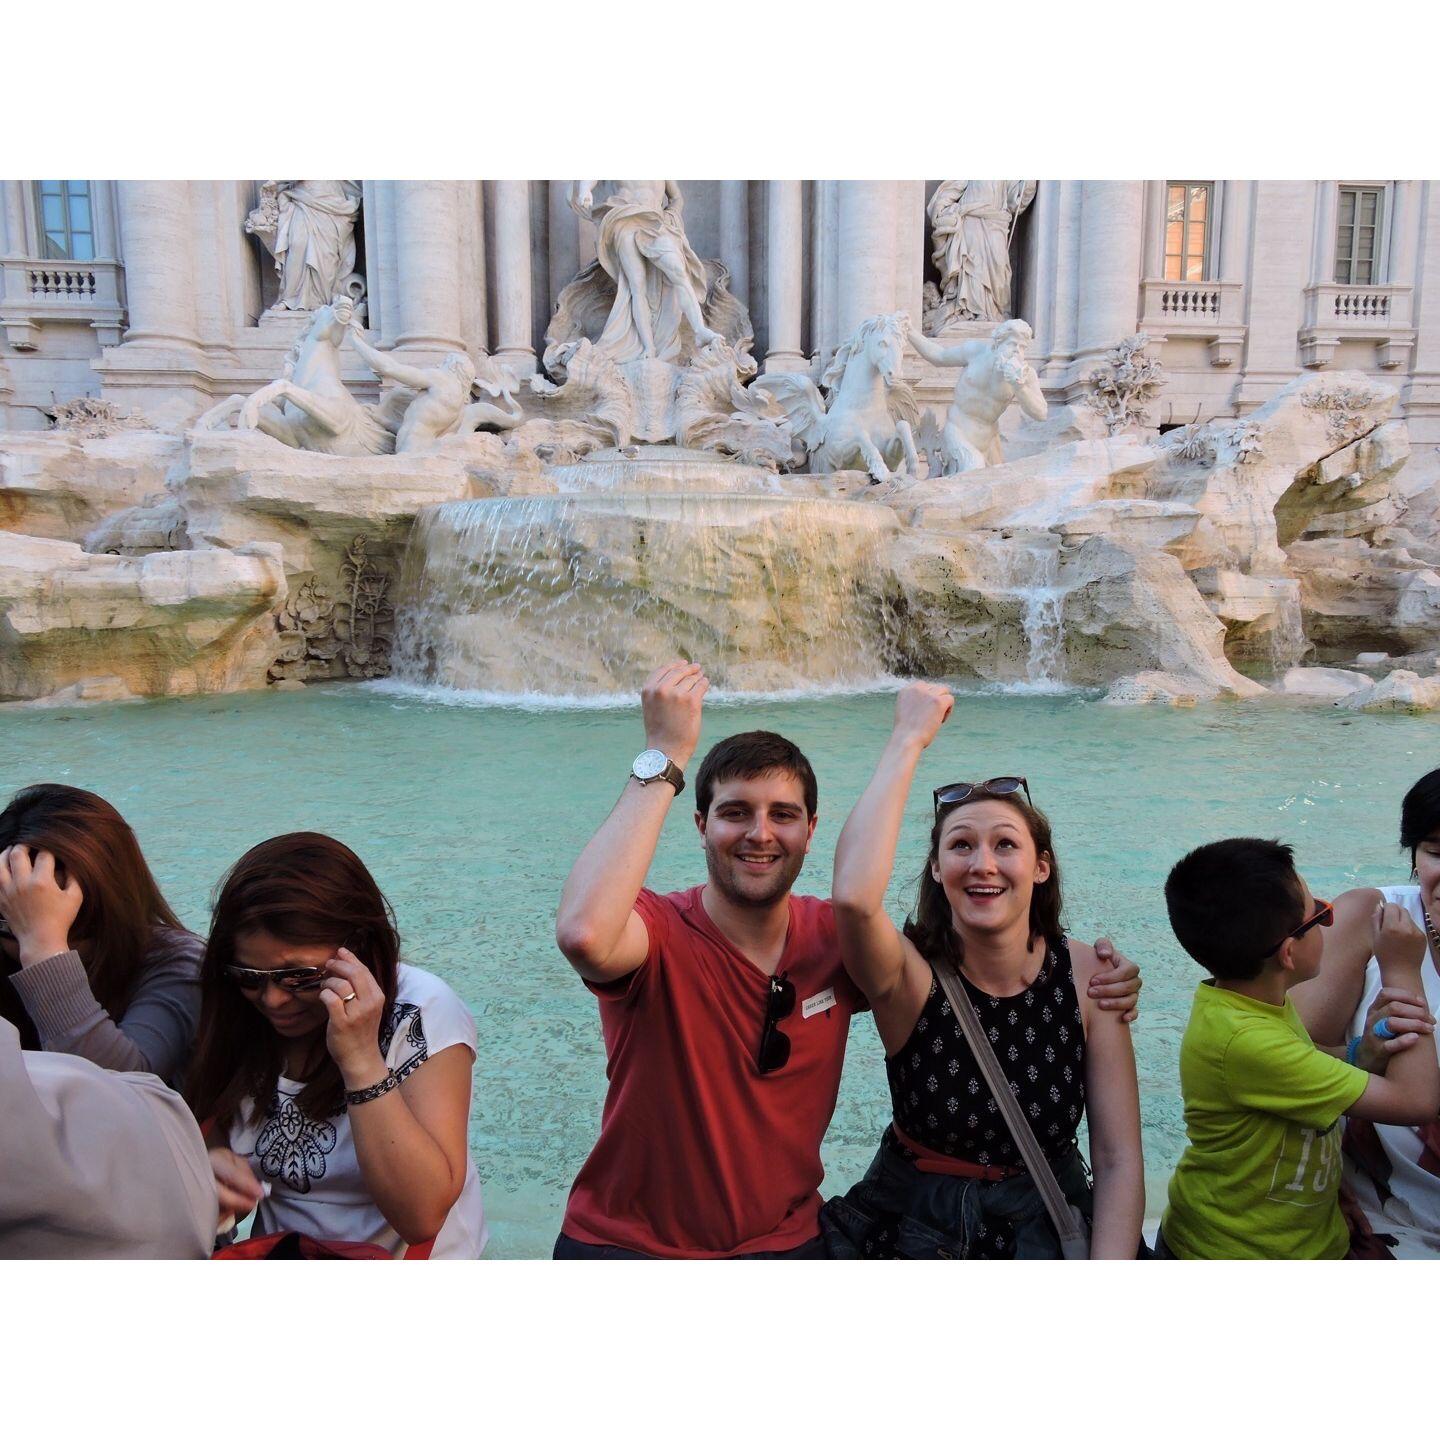 Trevi Fountain in Rome